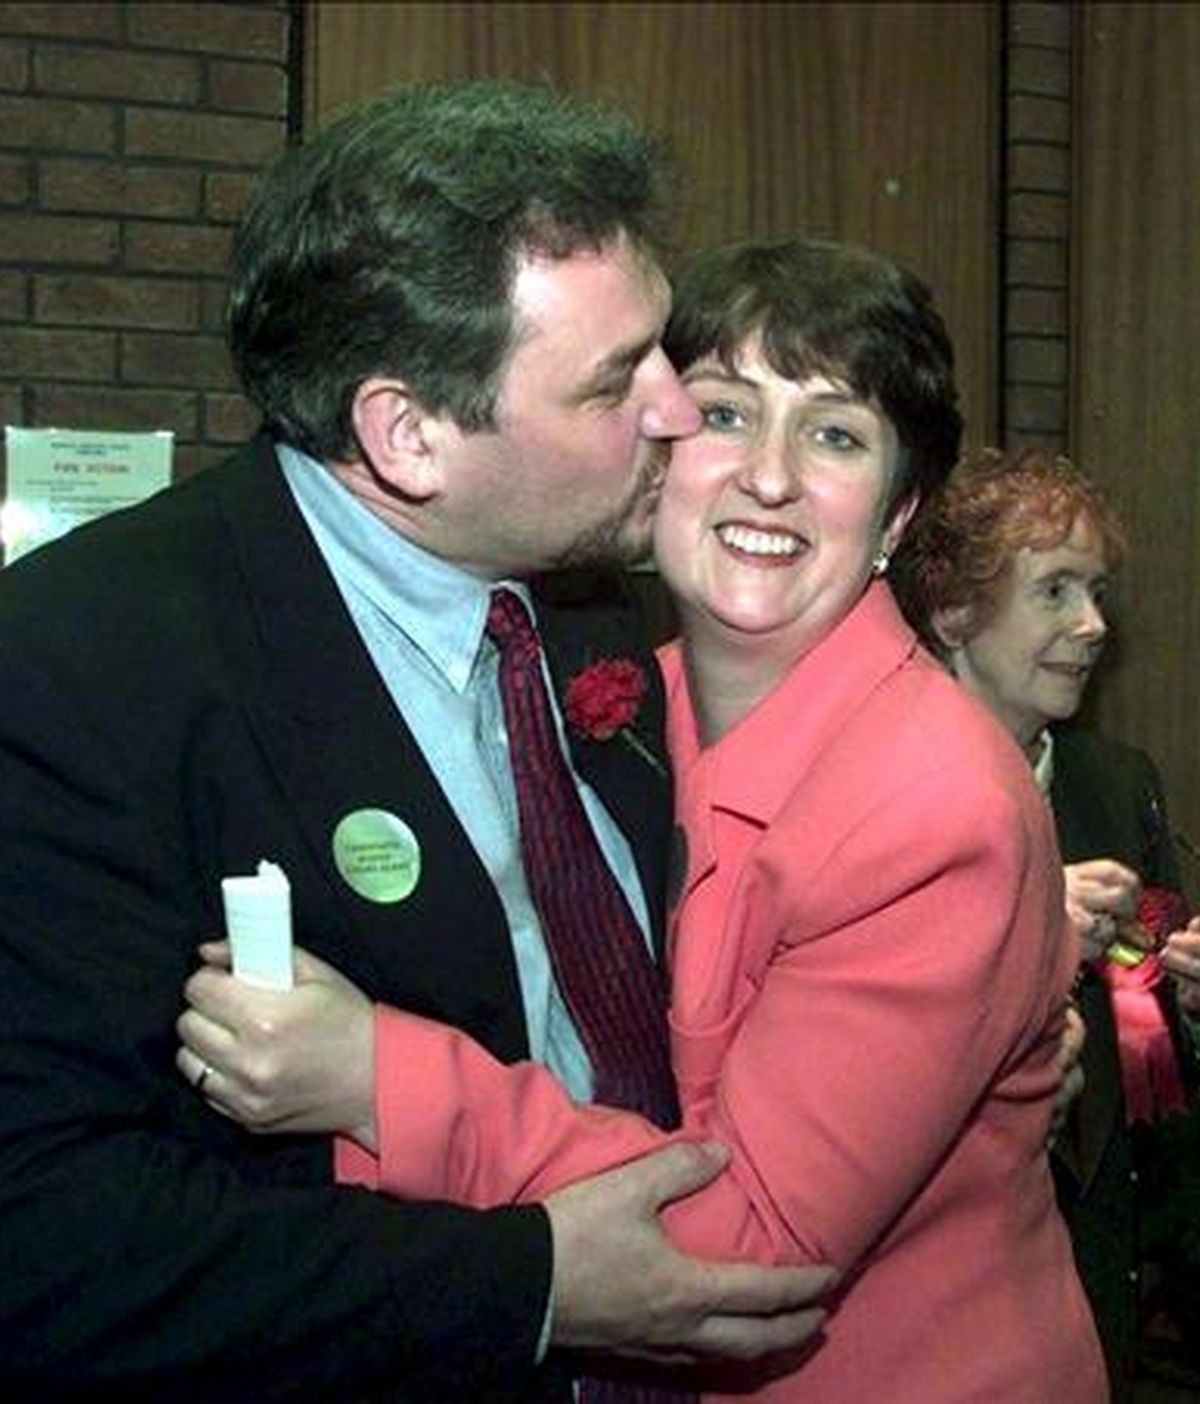 Foto de archivo que muestra a la ministra del Interior británica, Jacqui Smith (d), junto a su marido Richard Timney (i), en Redditch (Reino Unido). EFE